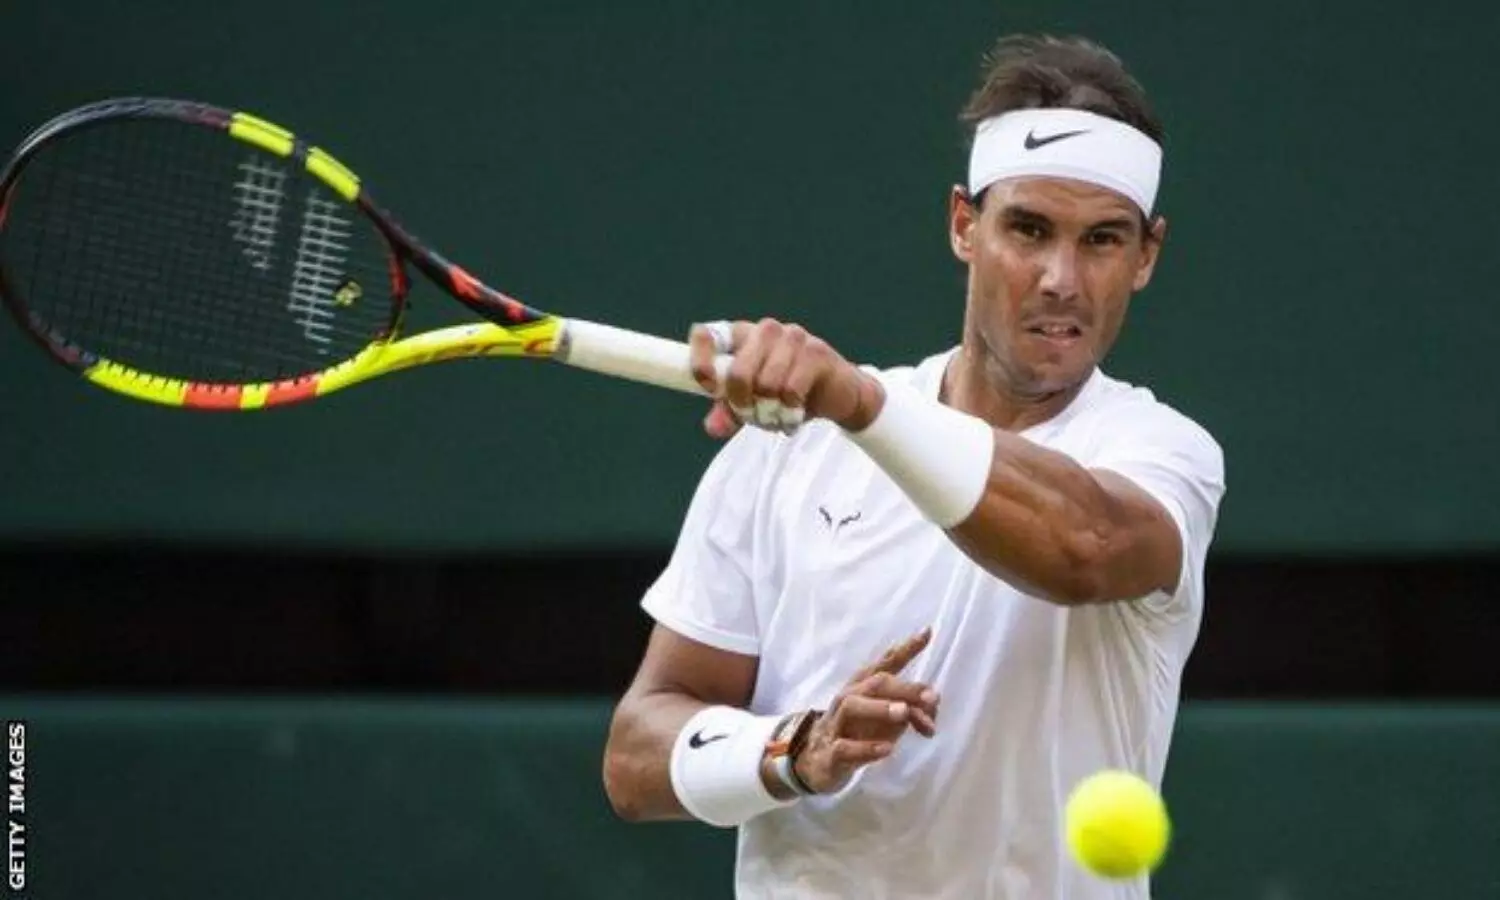 Wimbledon 2022 in Rafael Nadal